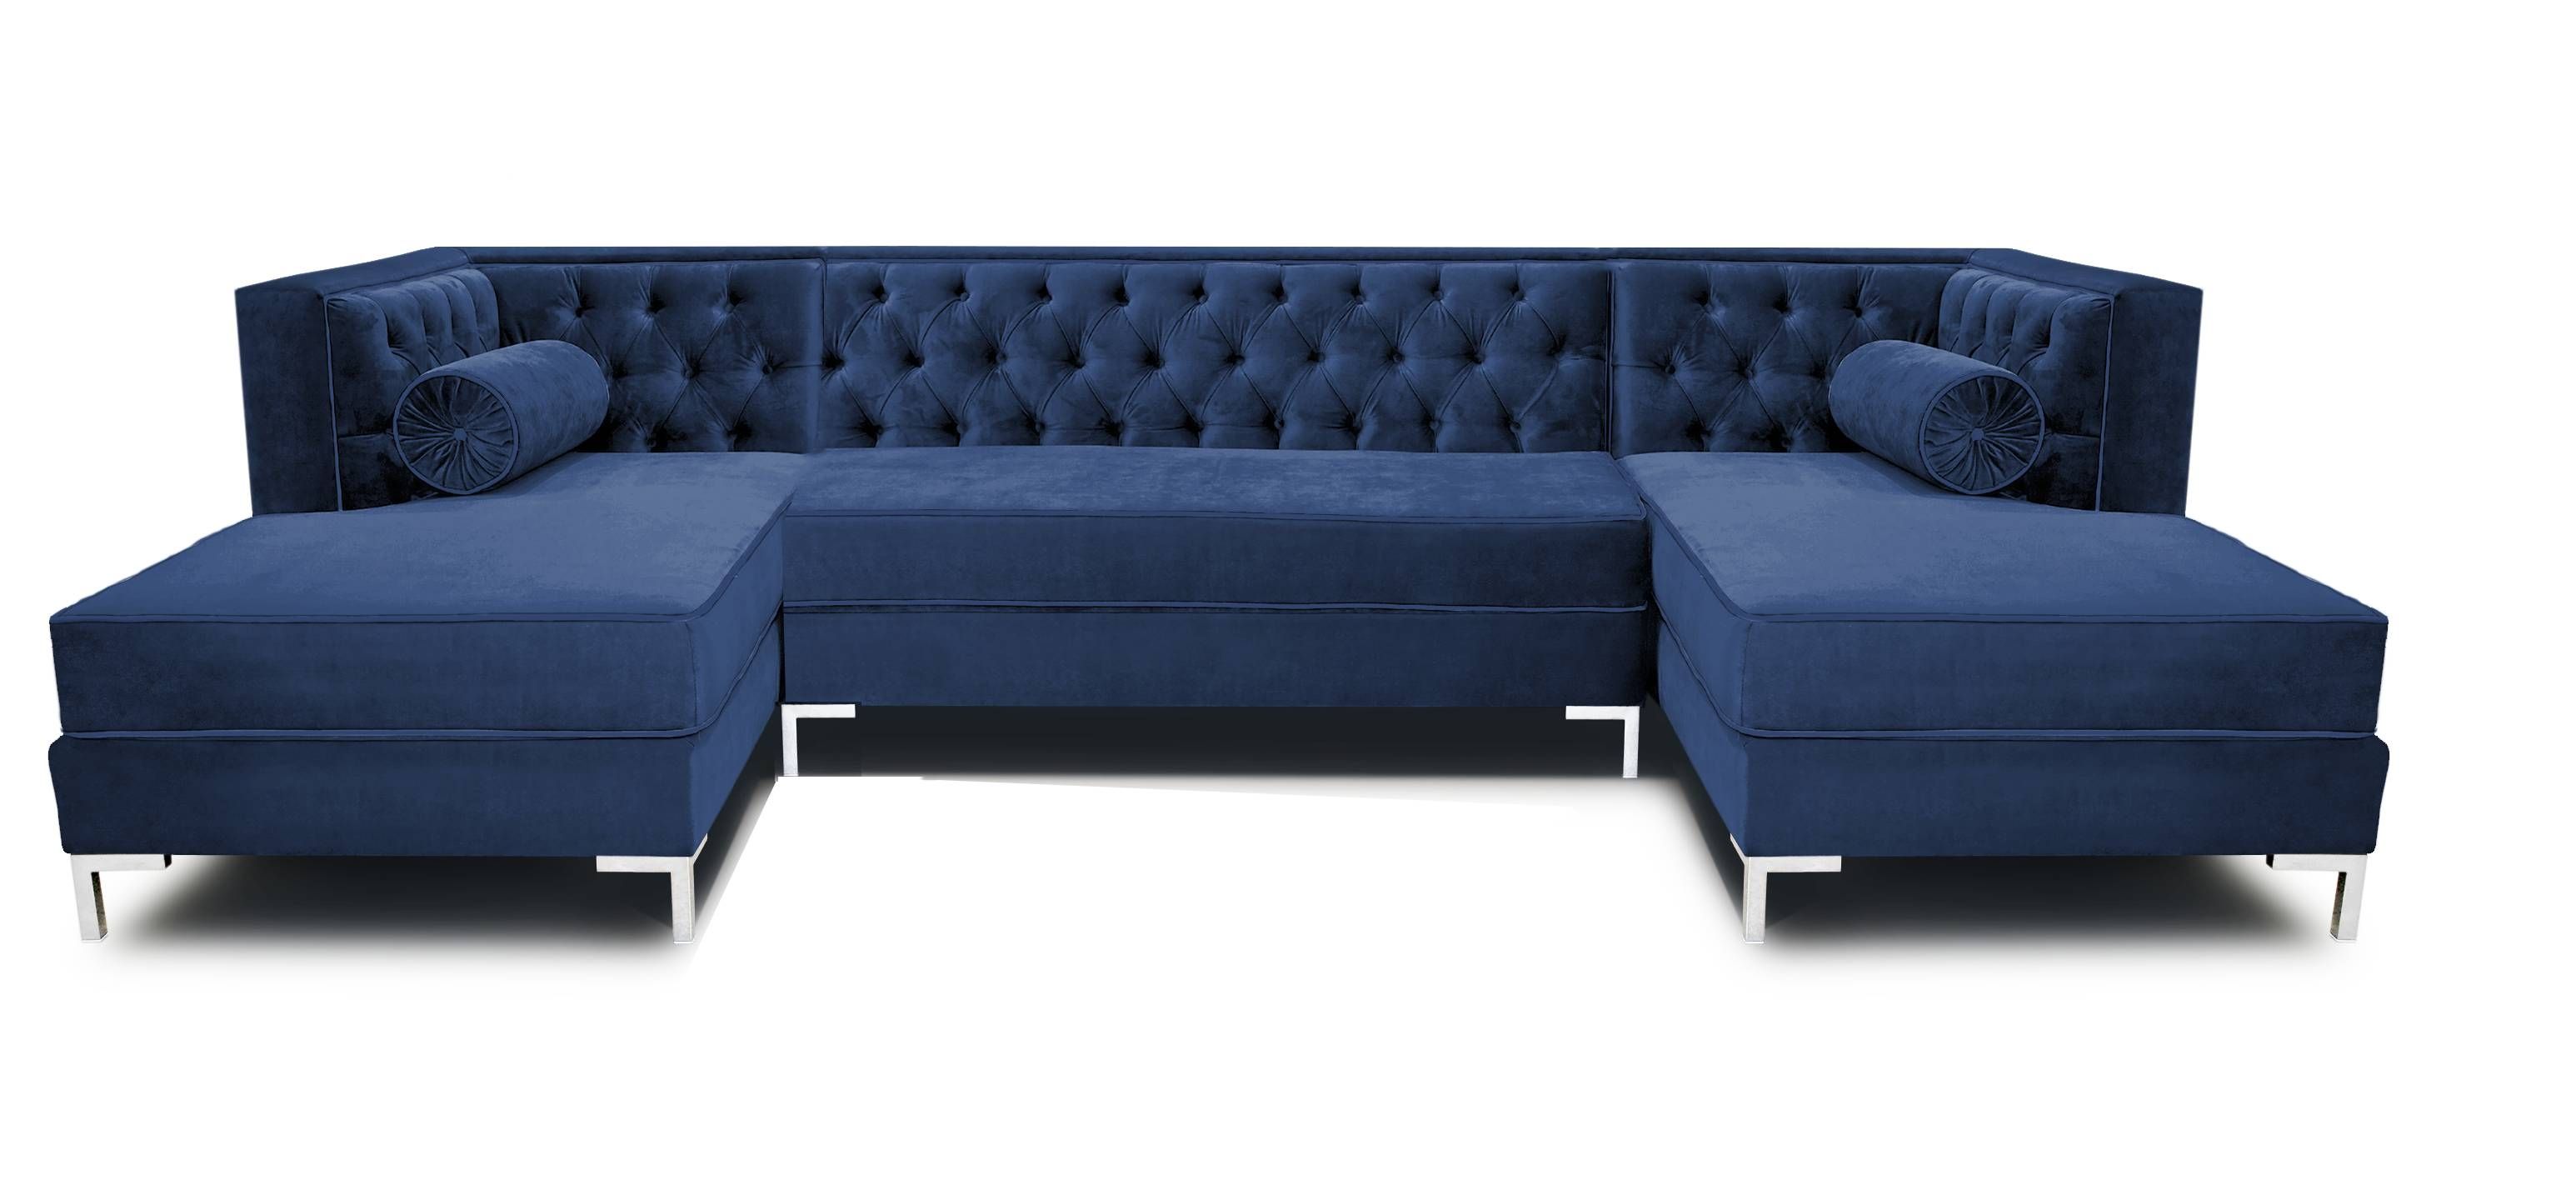 Fancy 10 Foot Sectional Sofa 15 In Jensen Lewis Sleeper Sofa With With 10 Foot Sectional Sofa (Photo 114 of 299)